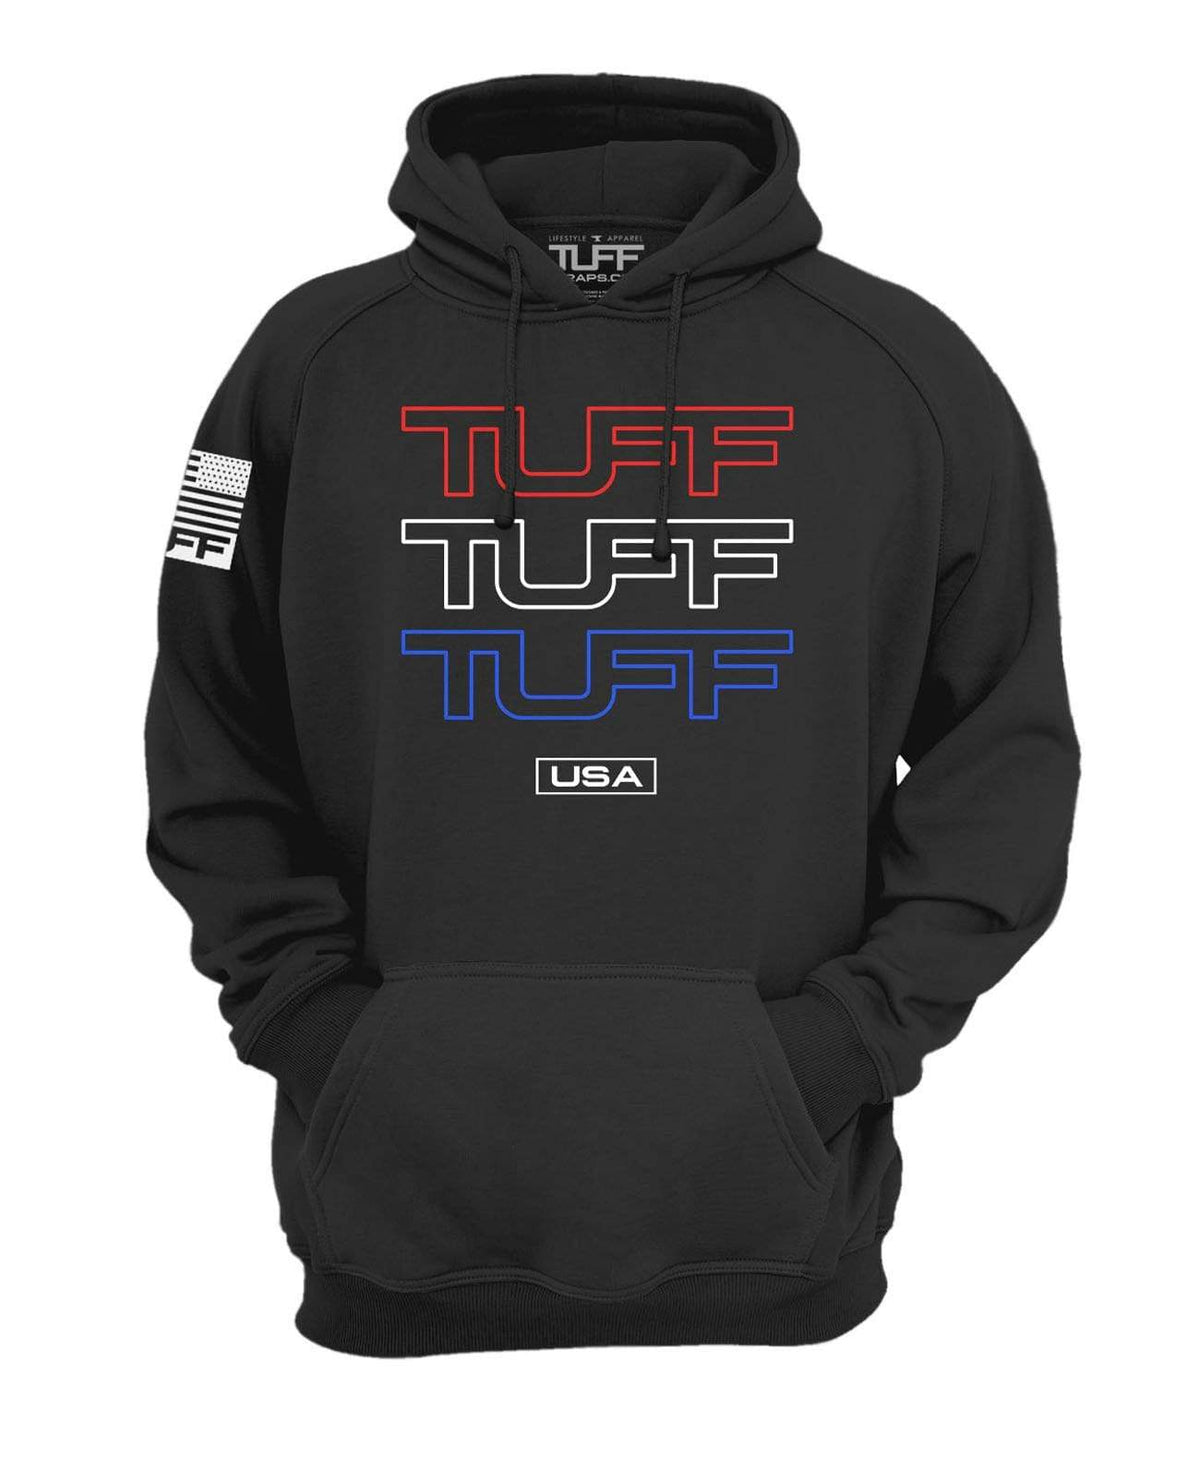 Triple TUFF USA Hooded Sweatshirt XS / Black TuffWraps.com